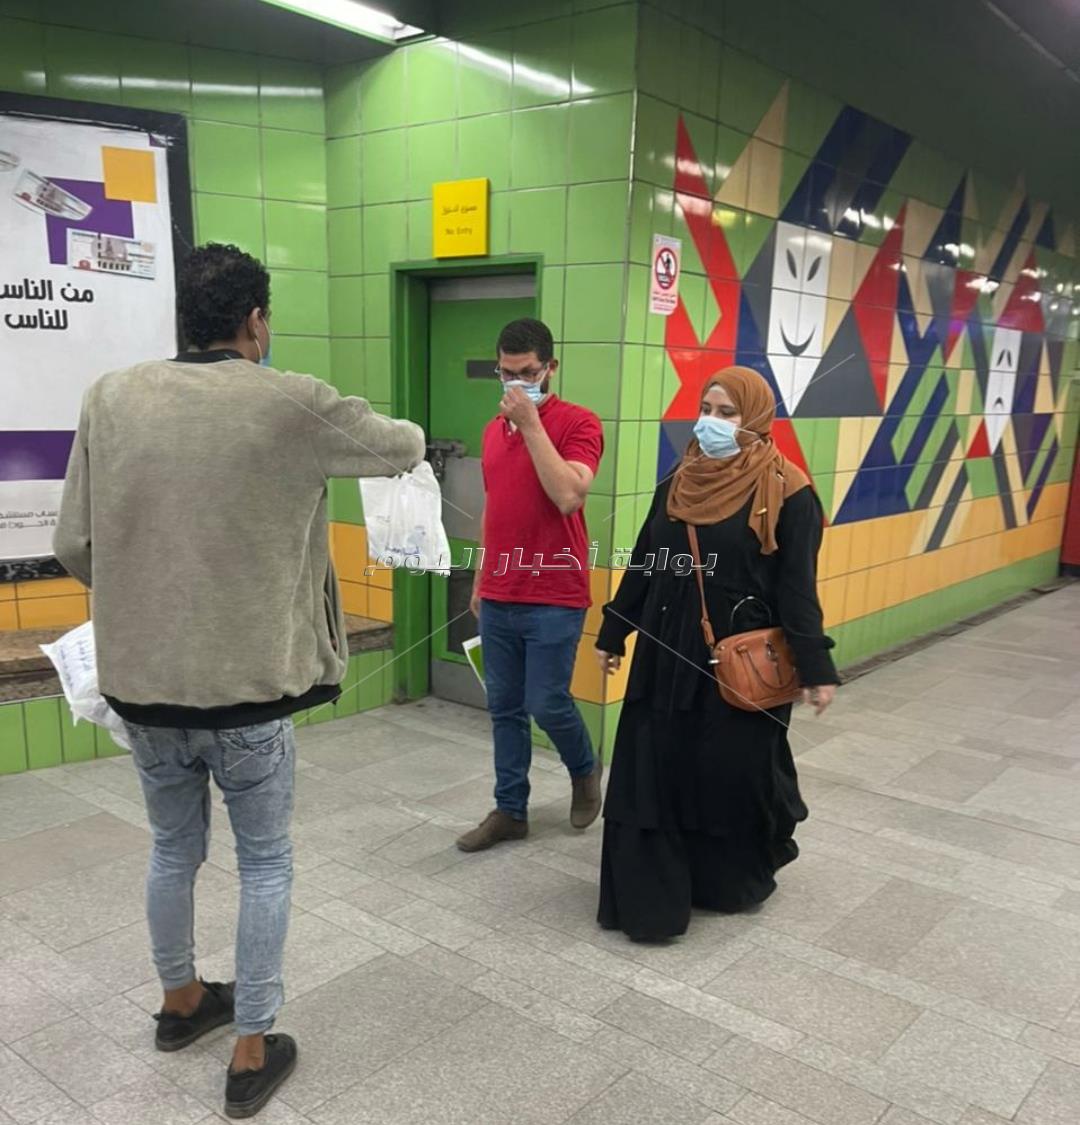 "النقل" تطلق حملة "هنفطر فى المحطة" في مترو الأنفاق والسكة الحديد | صور